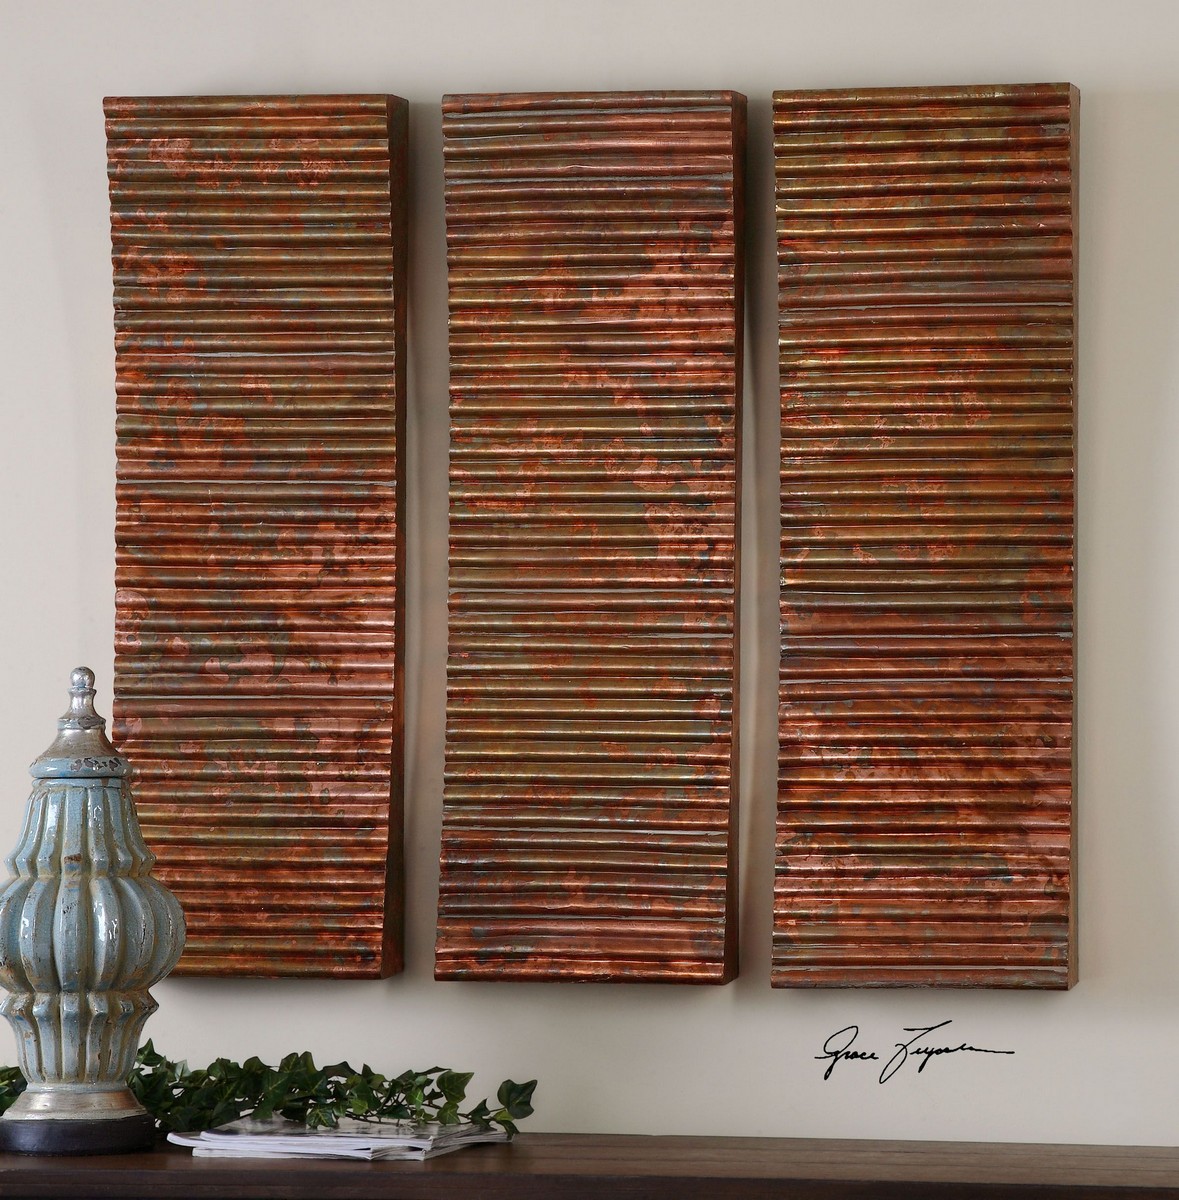 Uttermost Adara Copper Wall Art - Set of 3